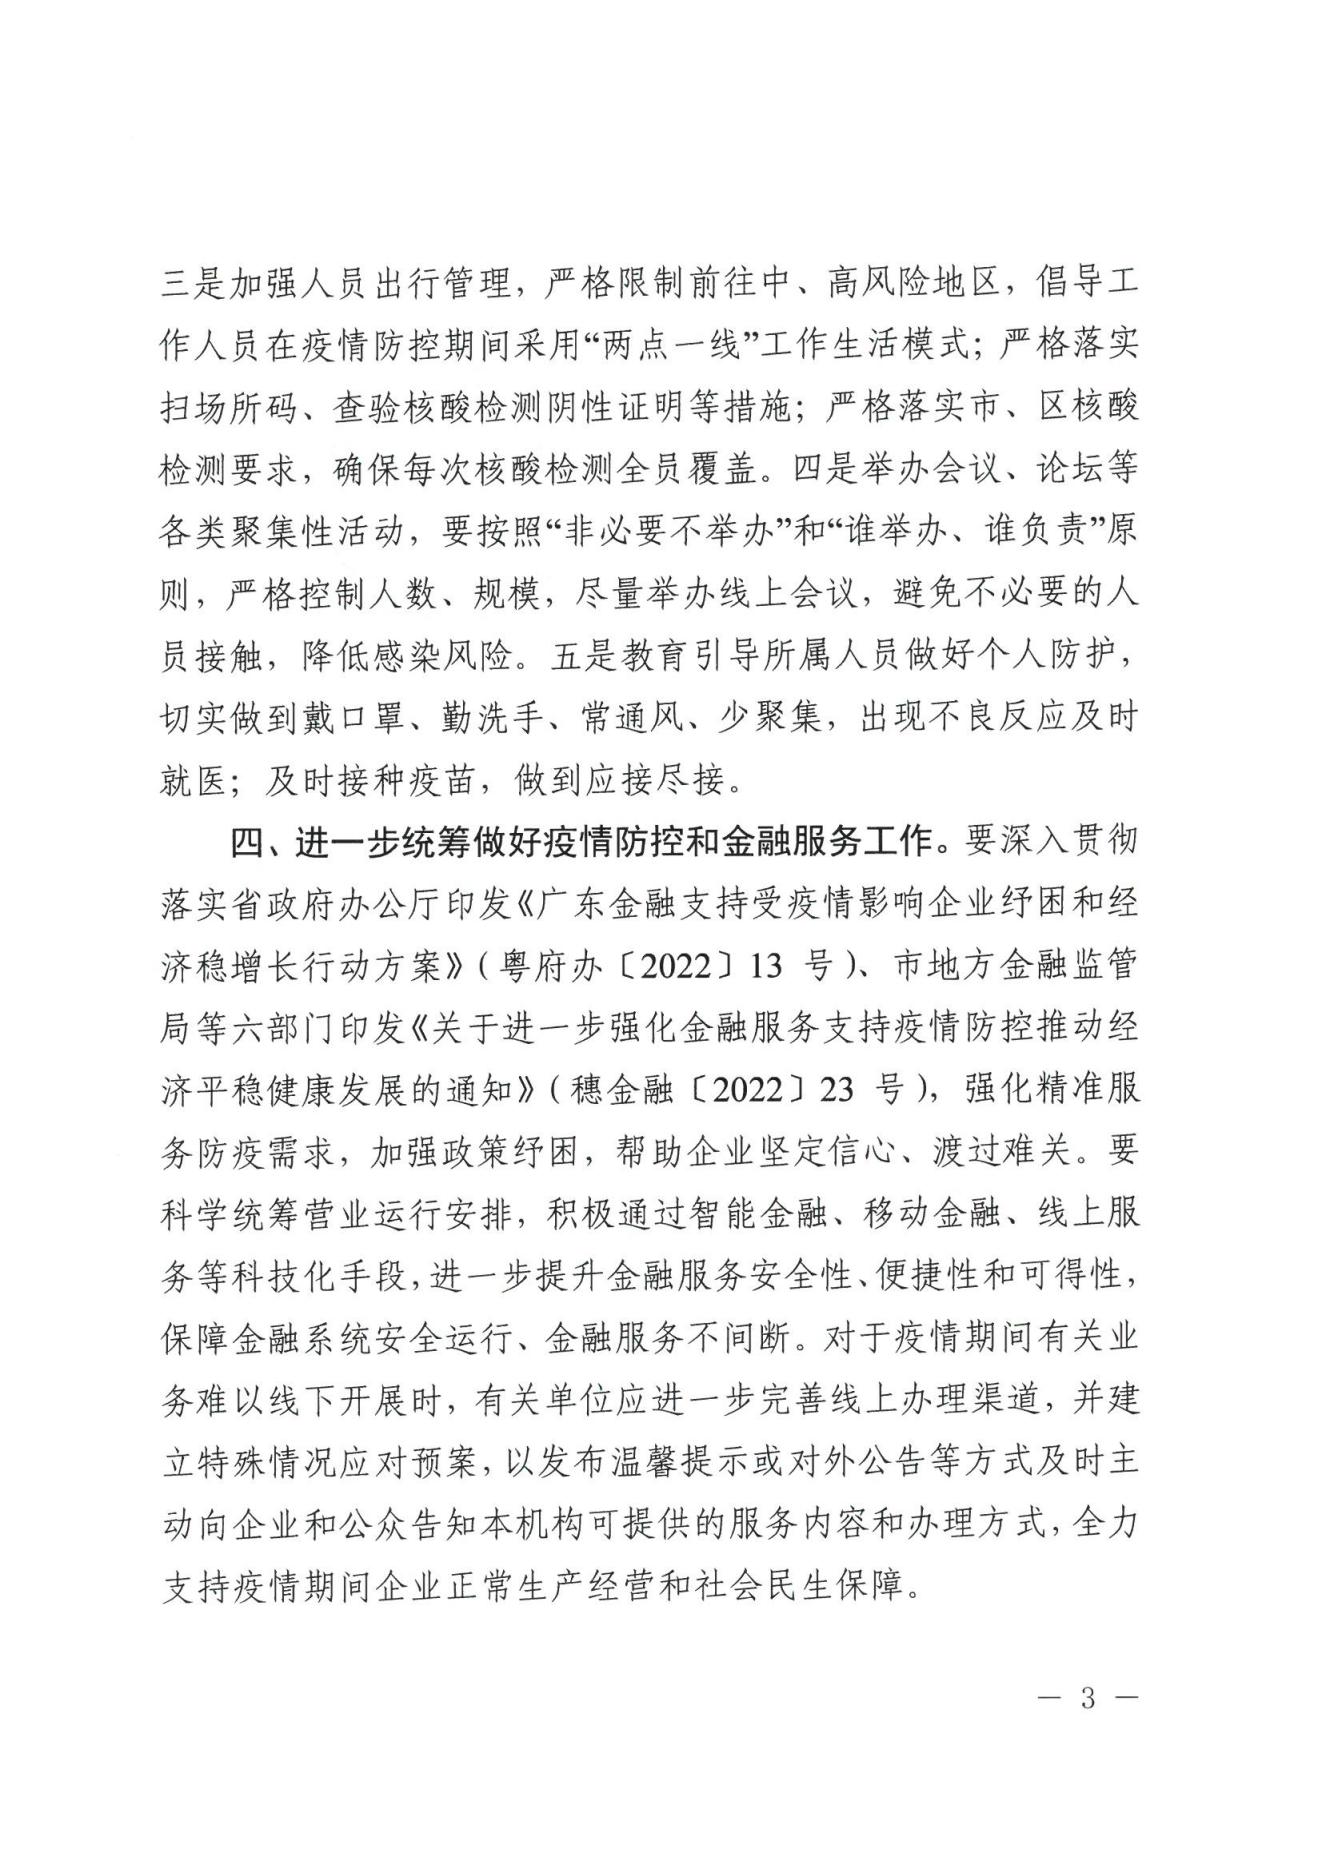 广州市地方金融监督管理局关于进一步做好全市金融行业新冠肺炎疫情防控工作的通知(1)(1)(1)_02.jpg